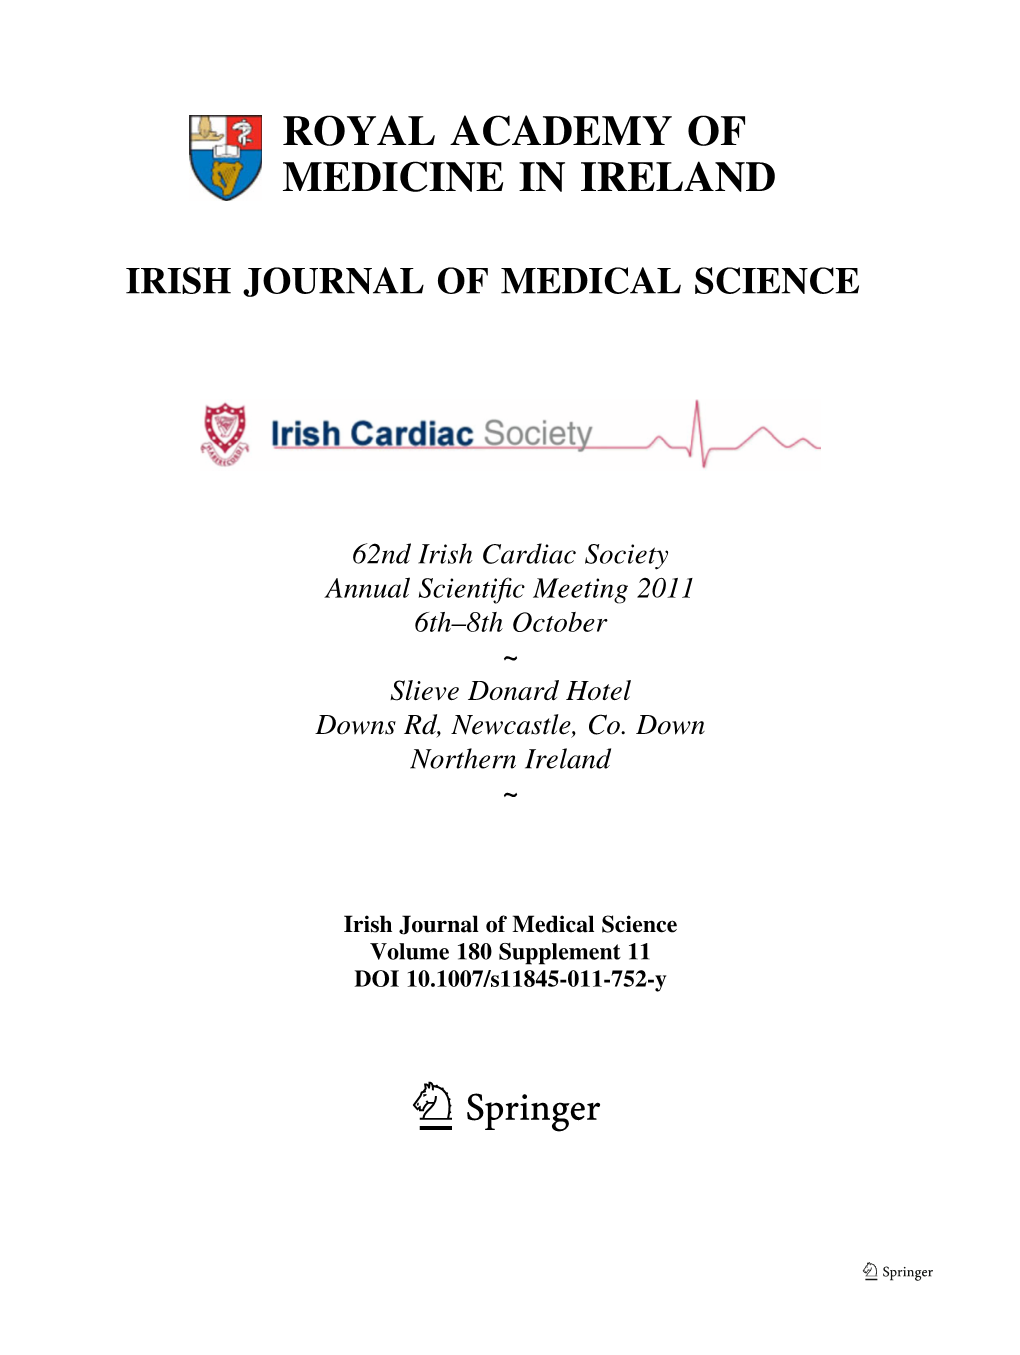 Royal Academy of Medicine in Ireland